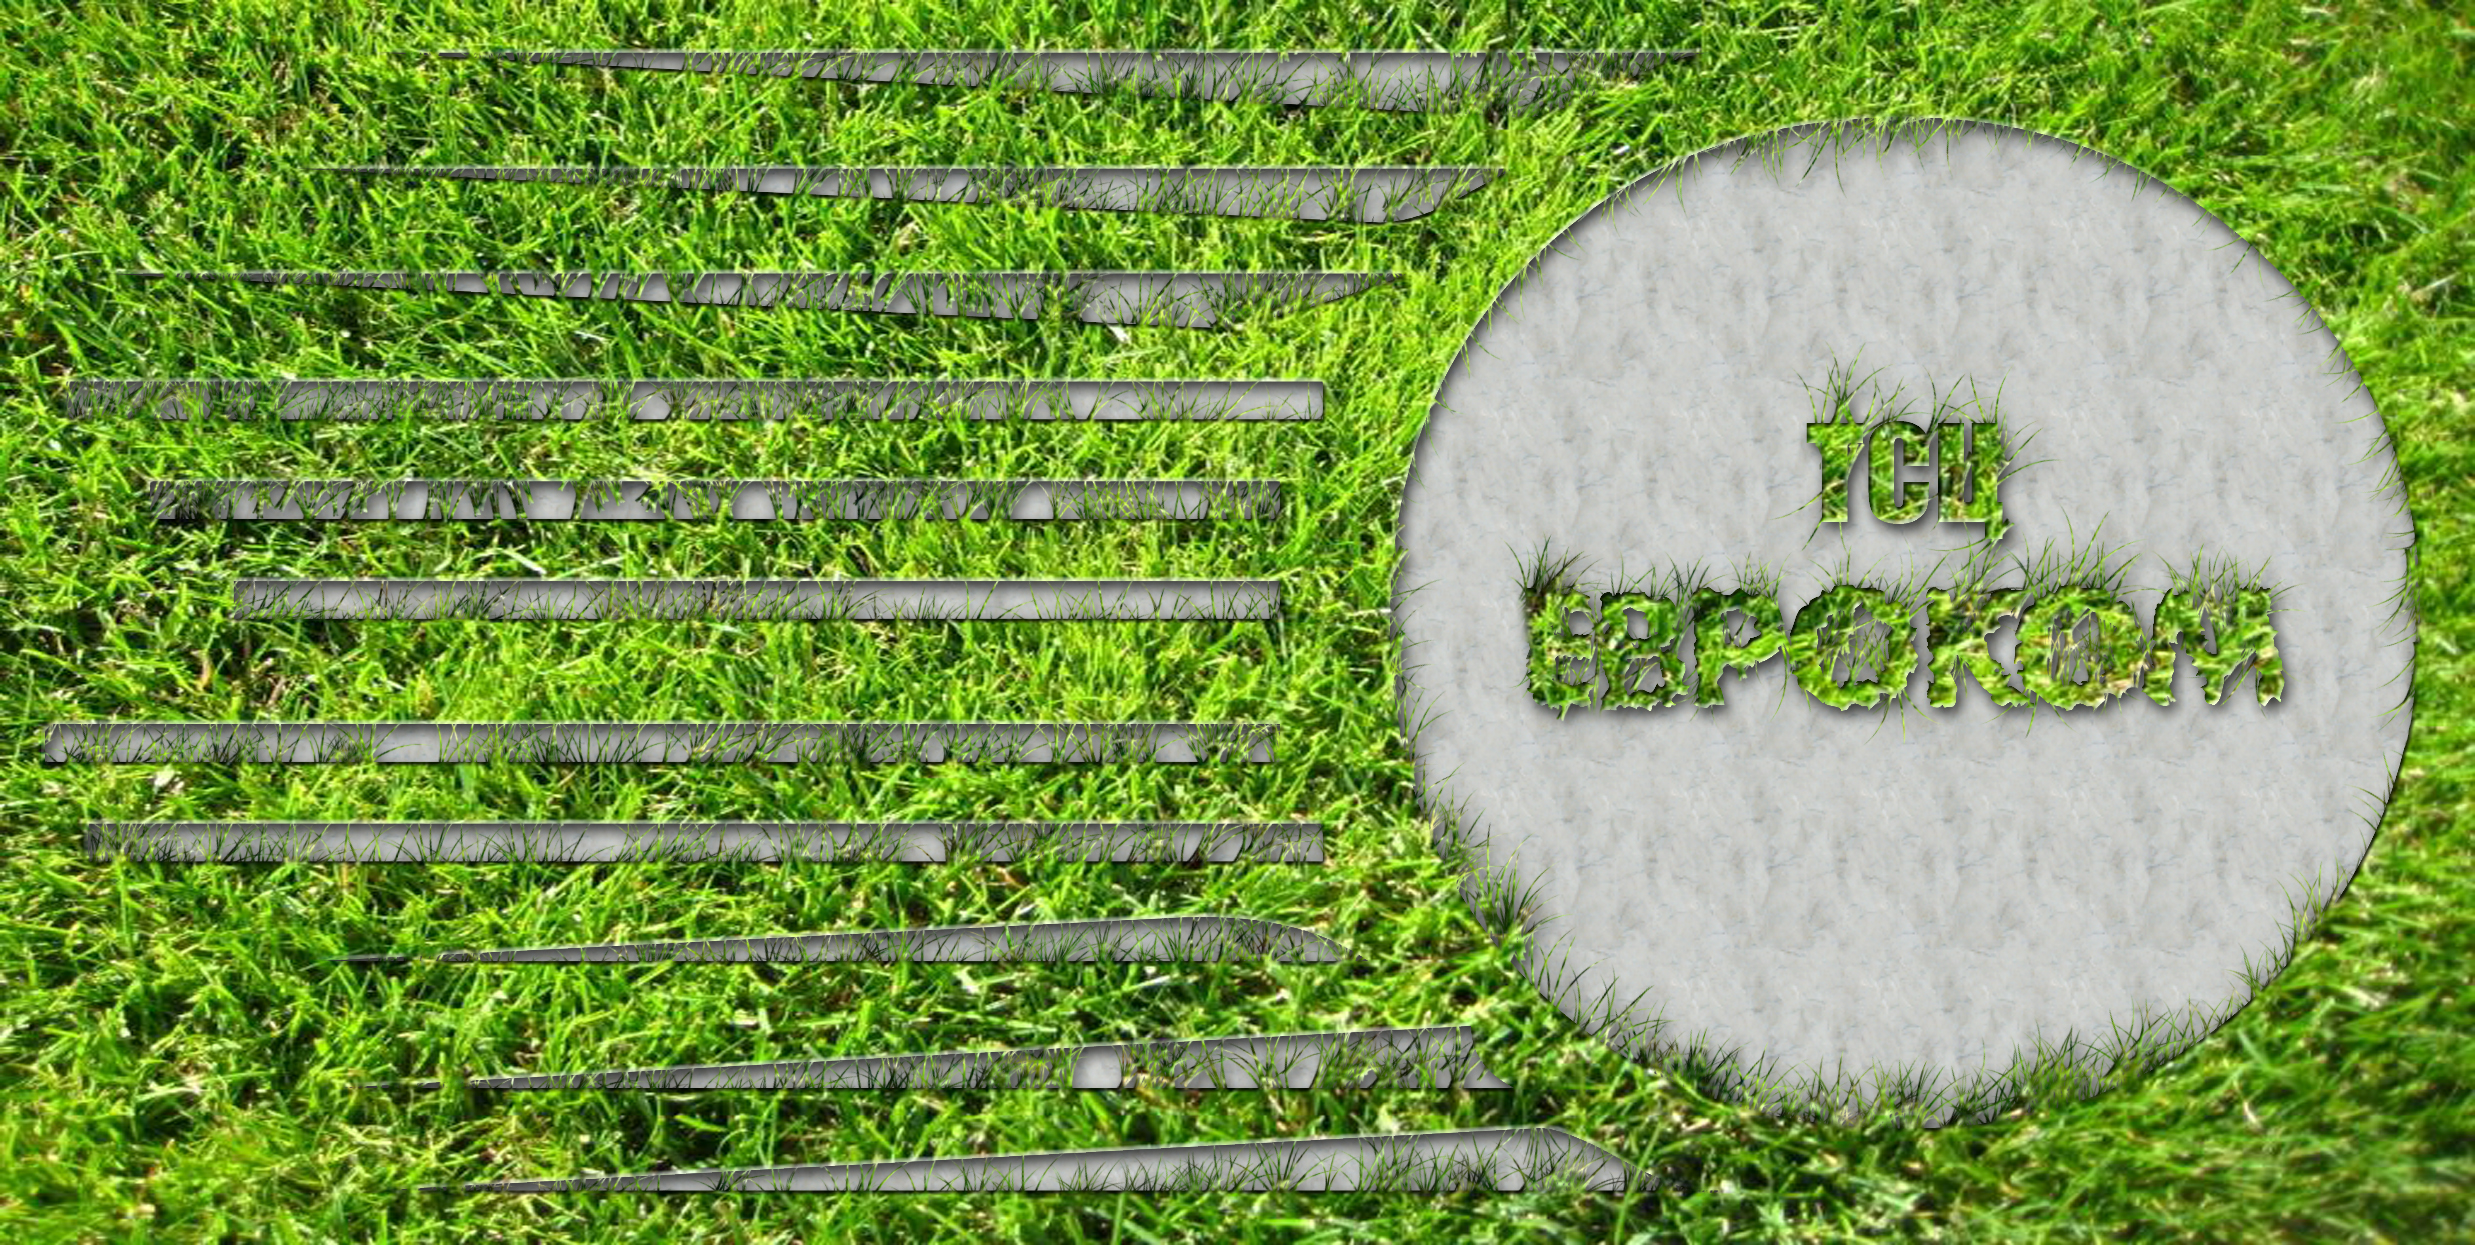 Лого в траве